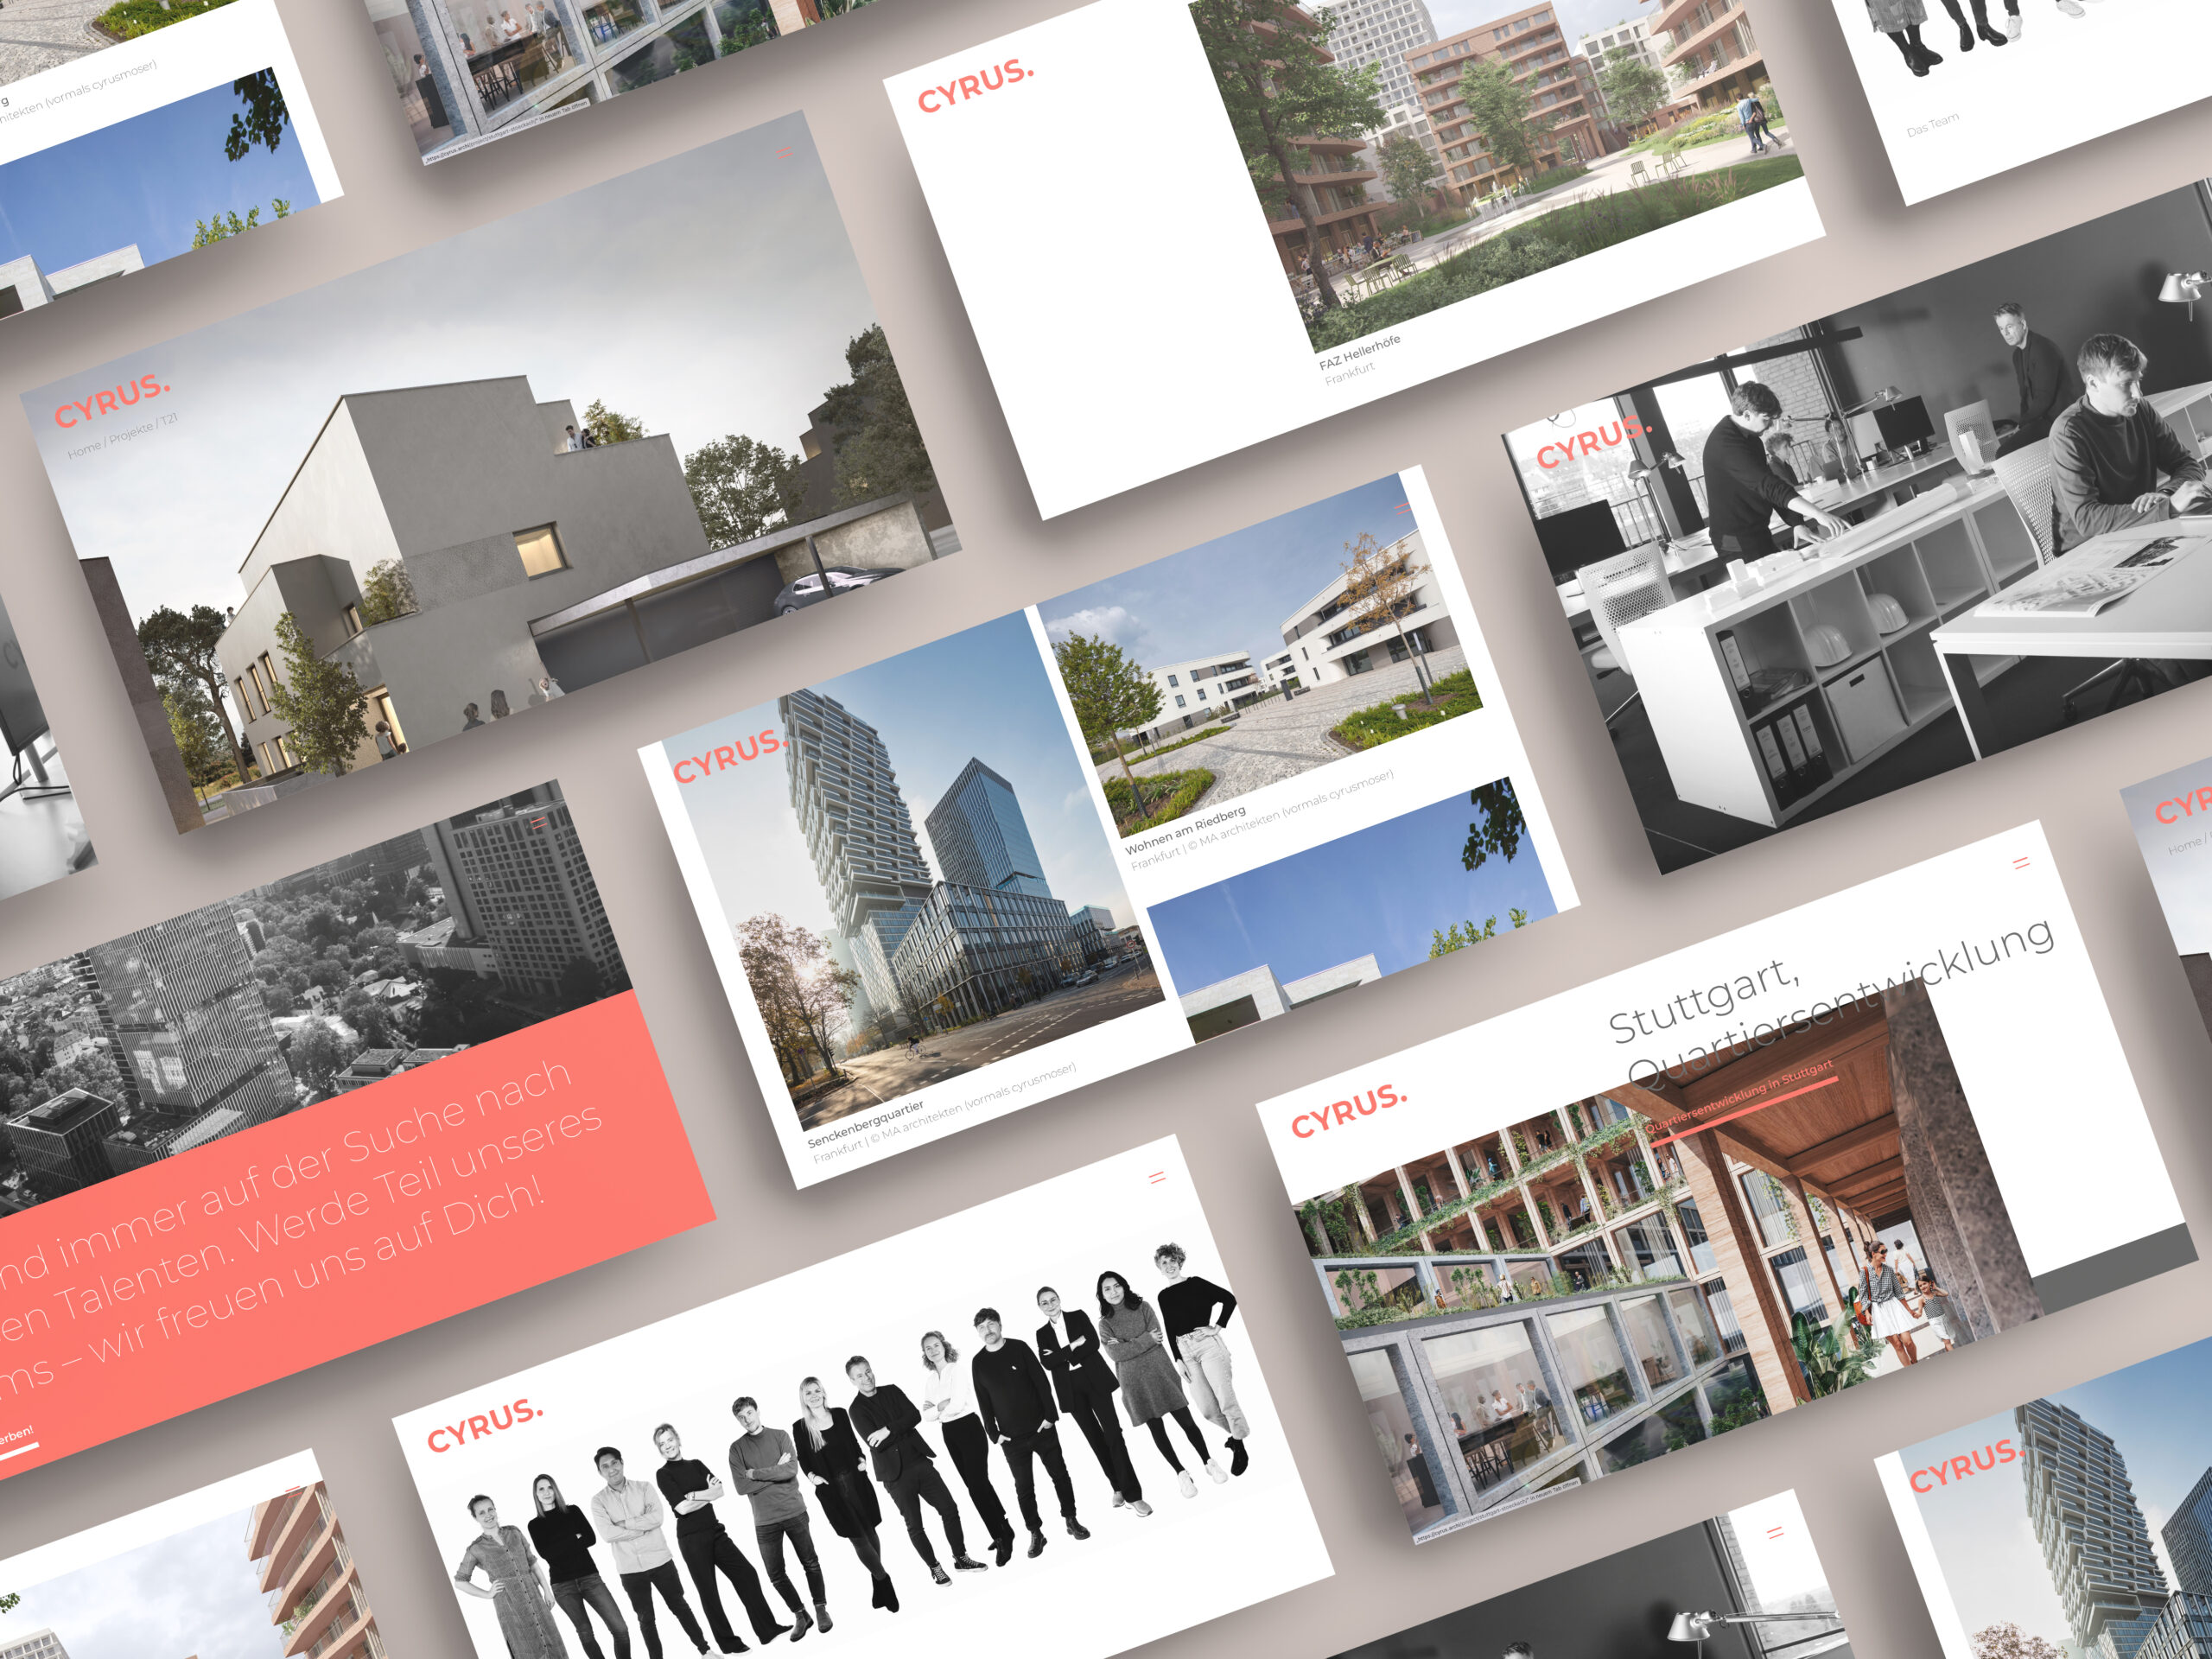 Cyrus Architekten Webdesign Frankfurt